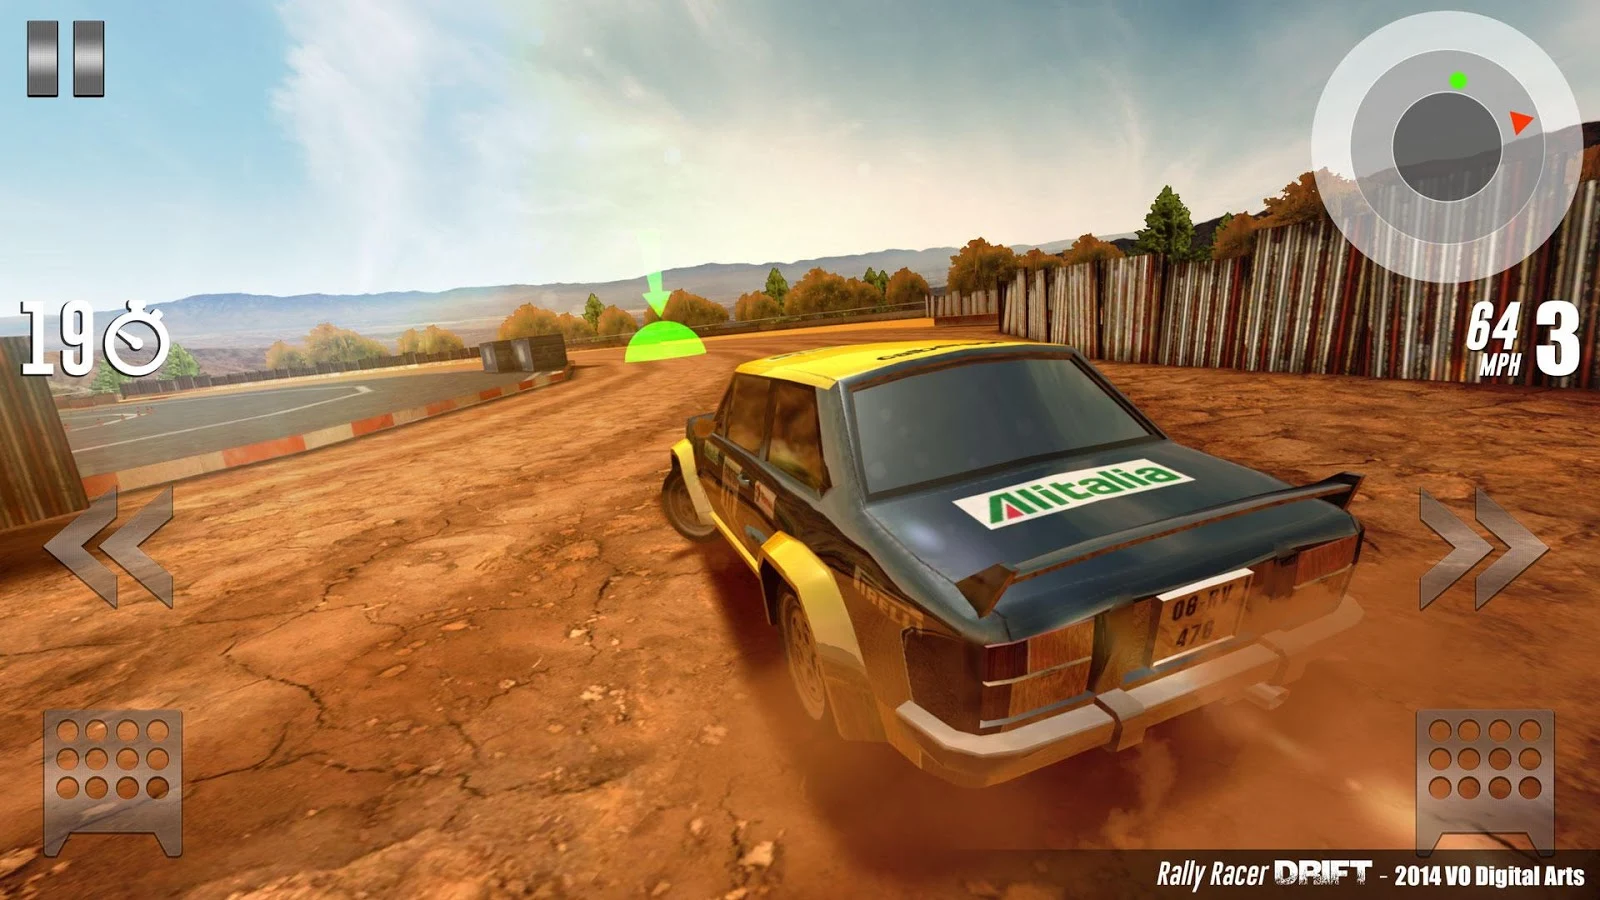 Rally Racer Drift - screenshot